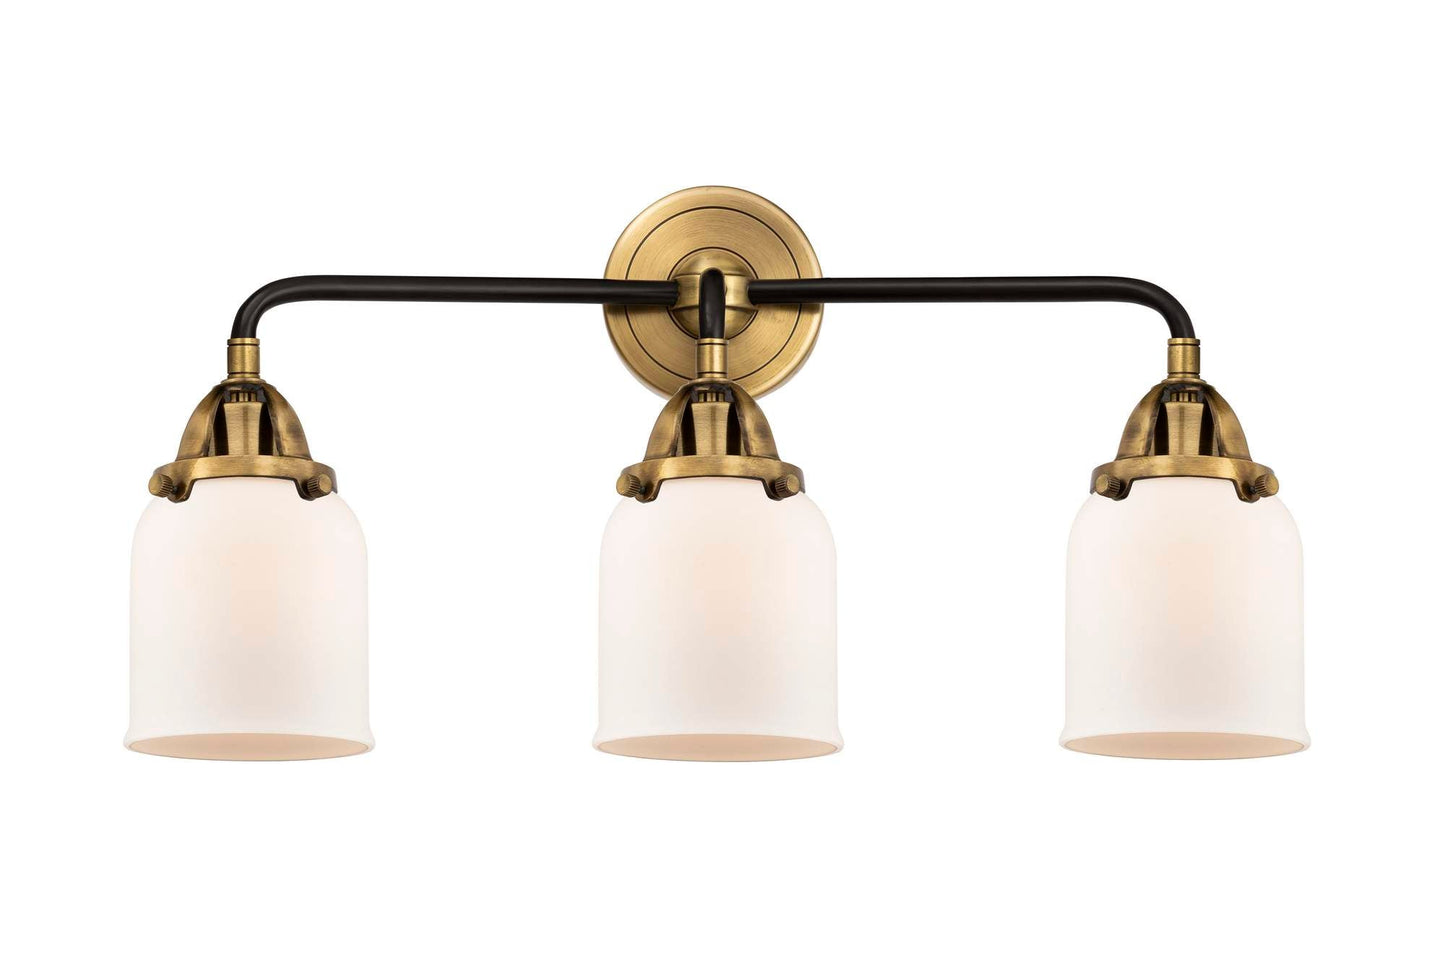 3-Light 23" Black Antique Brass Bath Vanity Light - Matte White Cased Small Bell Glass Shade - LED Bulbs